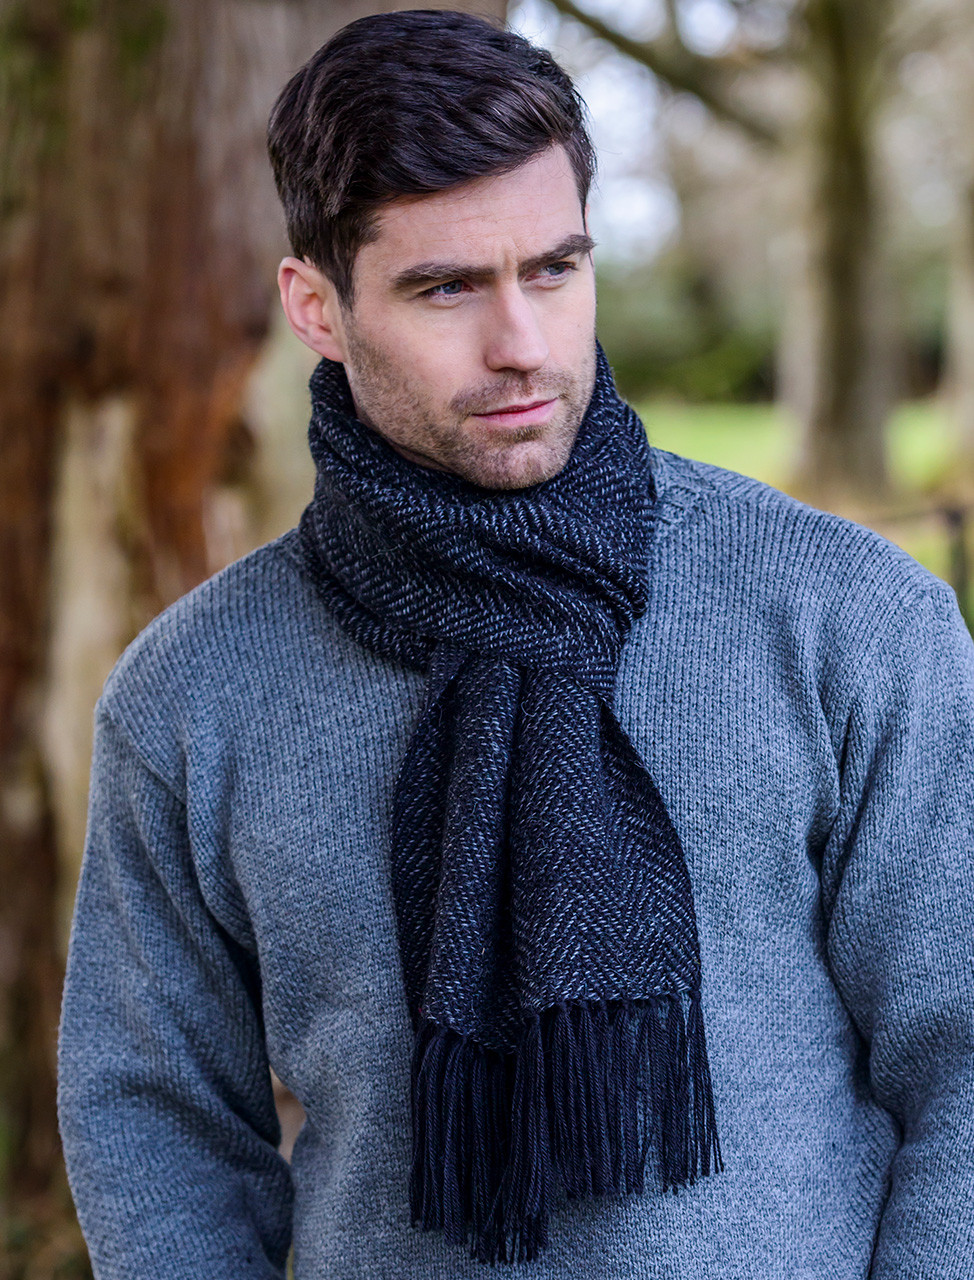 Mucros Weavers Soft Donegal Men's Tweed Scarf - Gray and Blue Herringbone